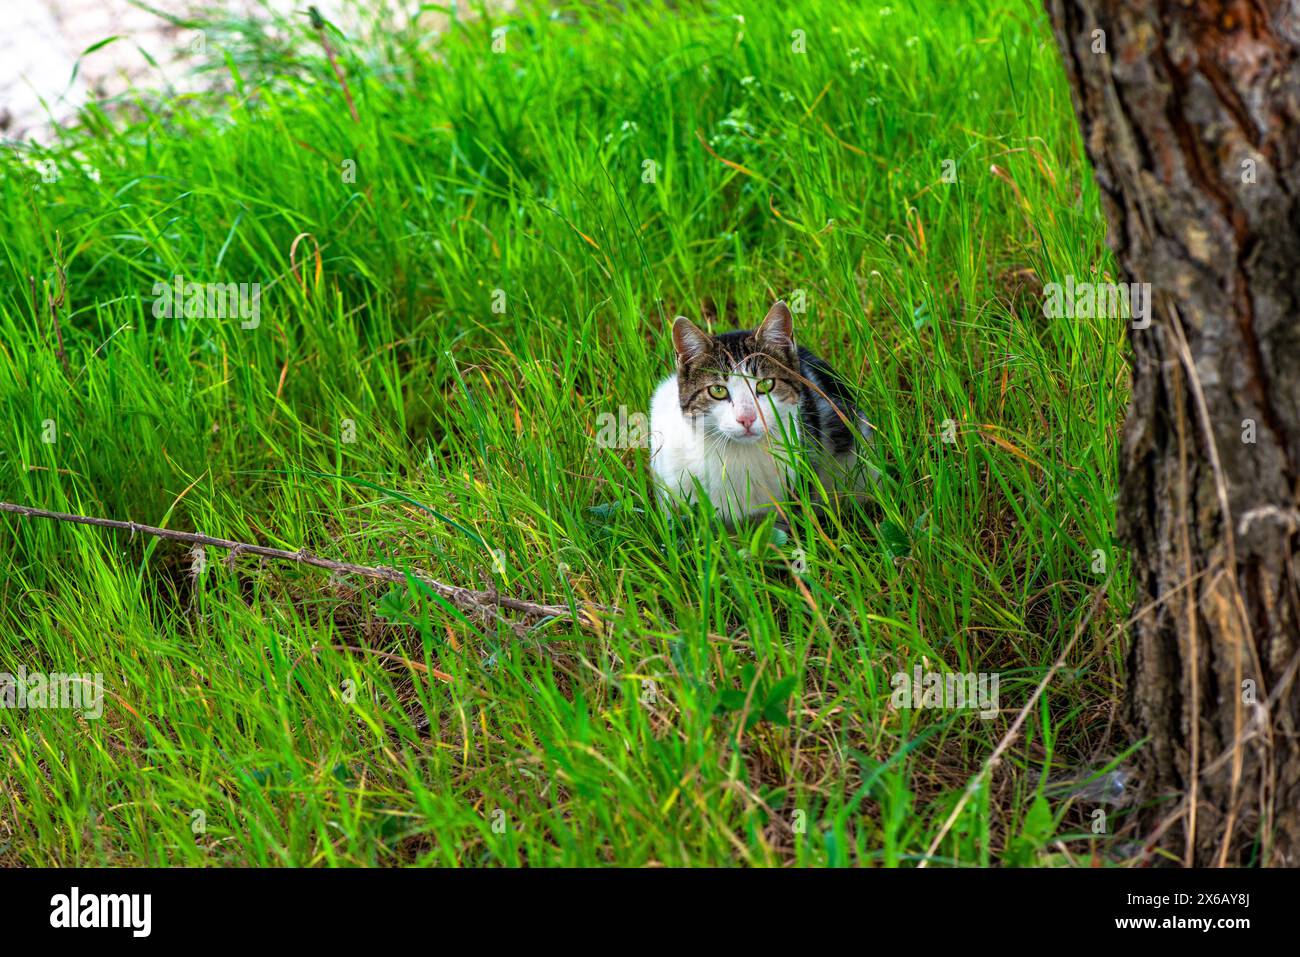 Eine verspielte Katze fügt sich nahtlos in das Gras ein und zeigt ihren natürlichen Instinkt für Tarnung und Outdoor-Erkundungen. Stockfoto